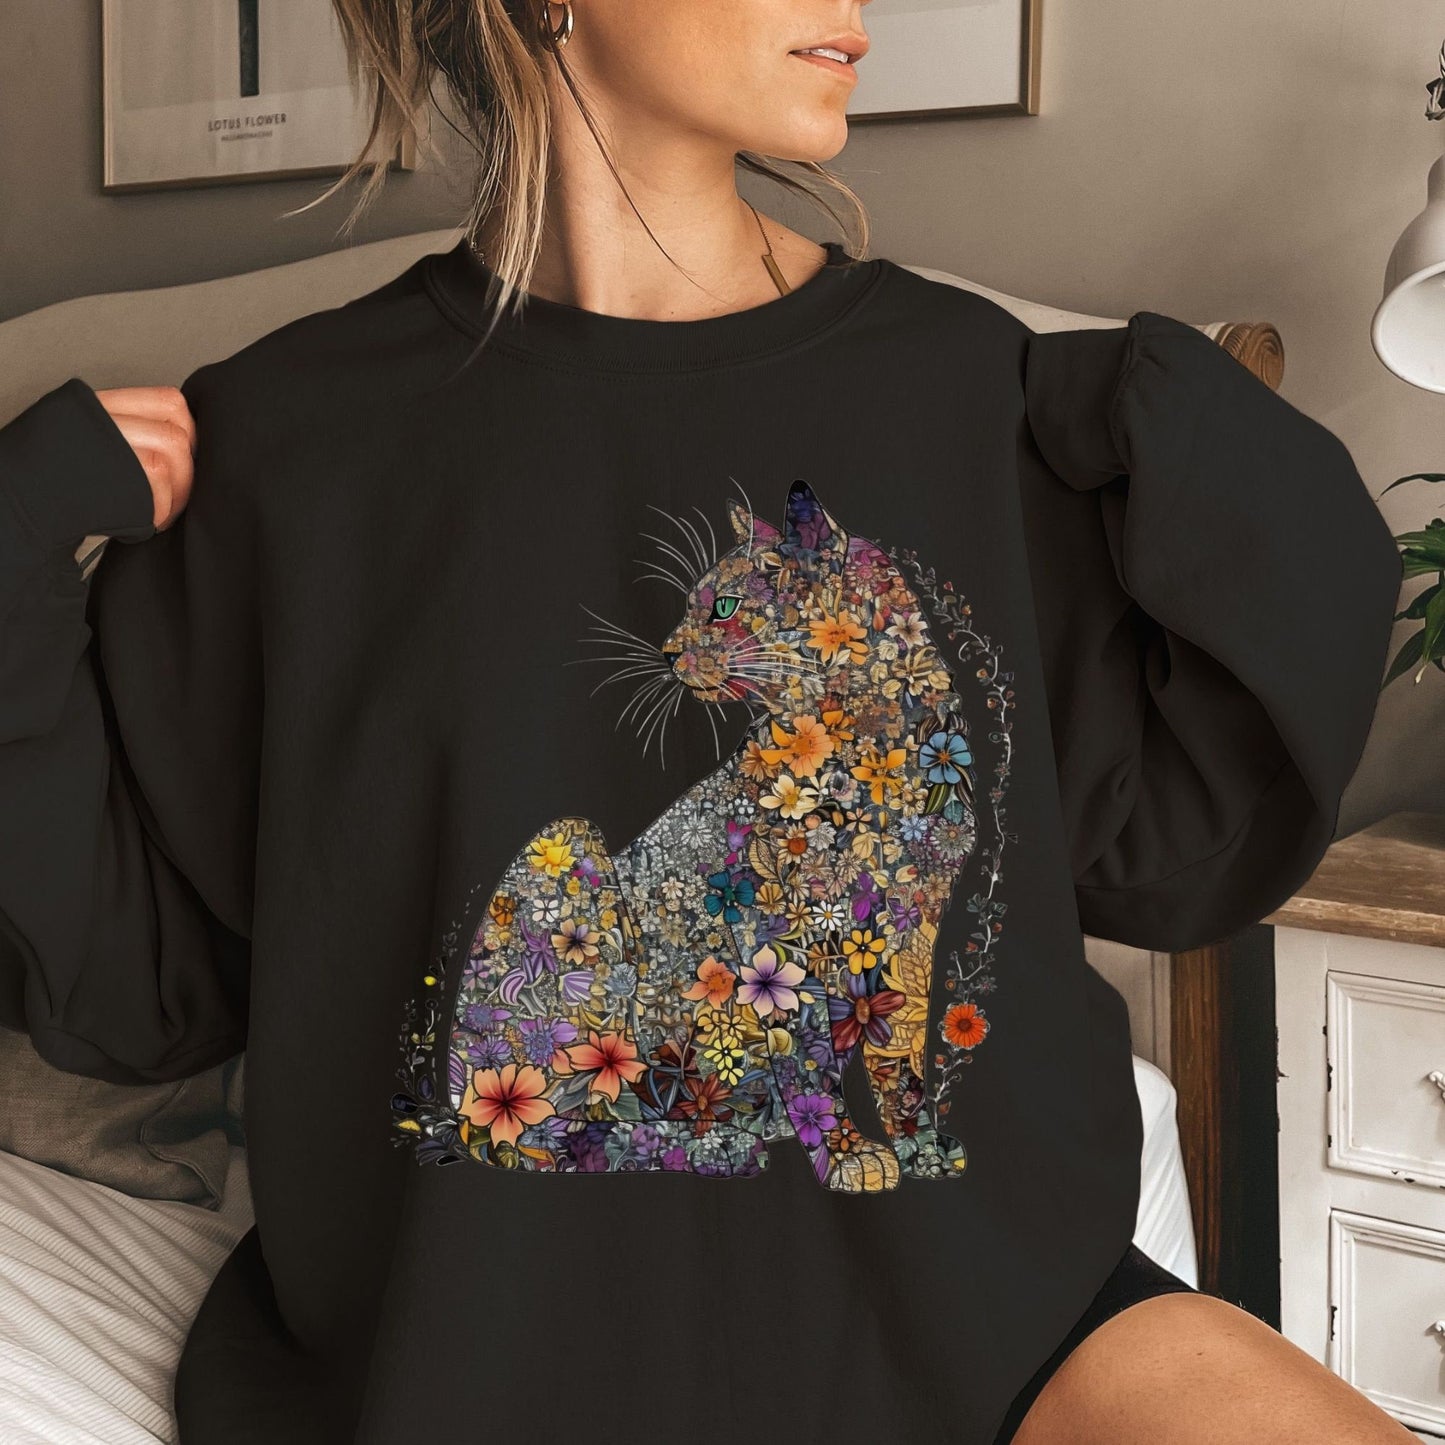 Katzenmama Sweatshirt und Shirts mit Blumenmuster